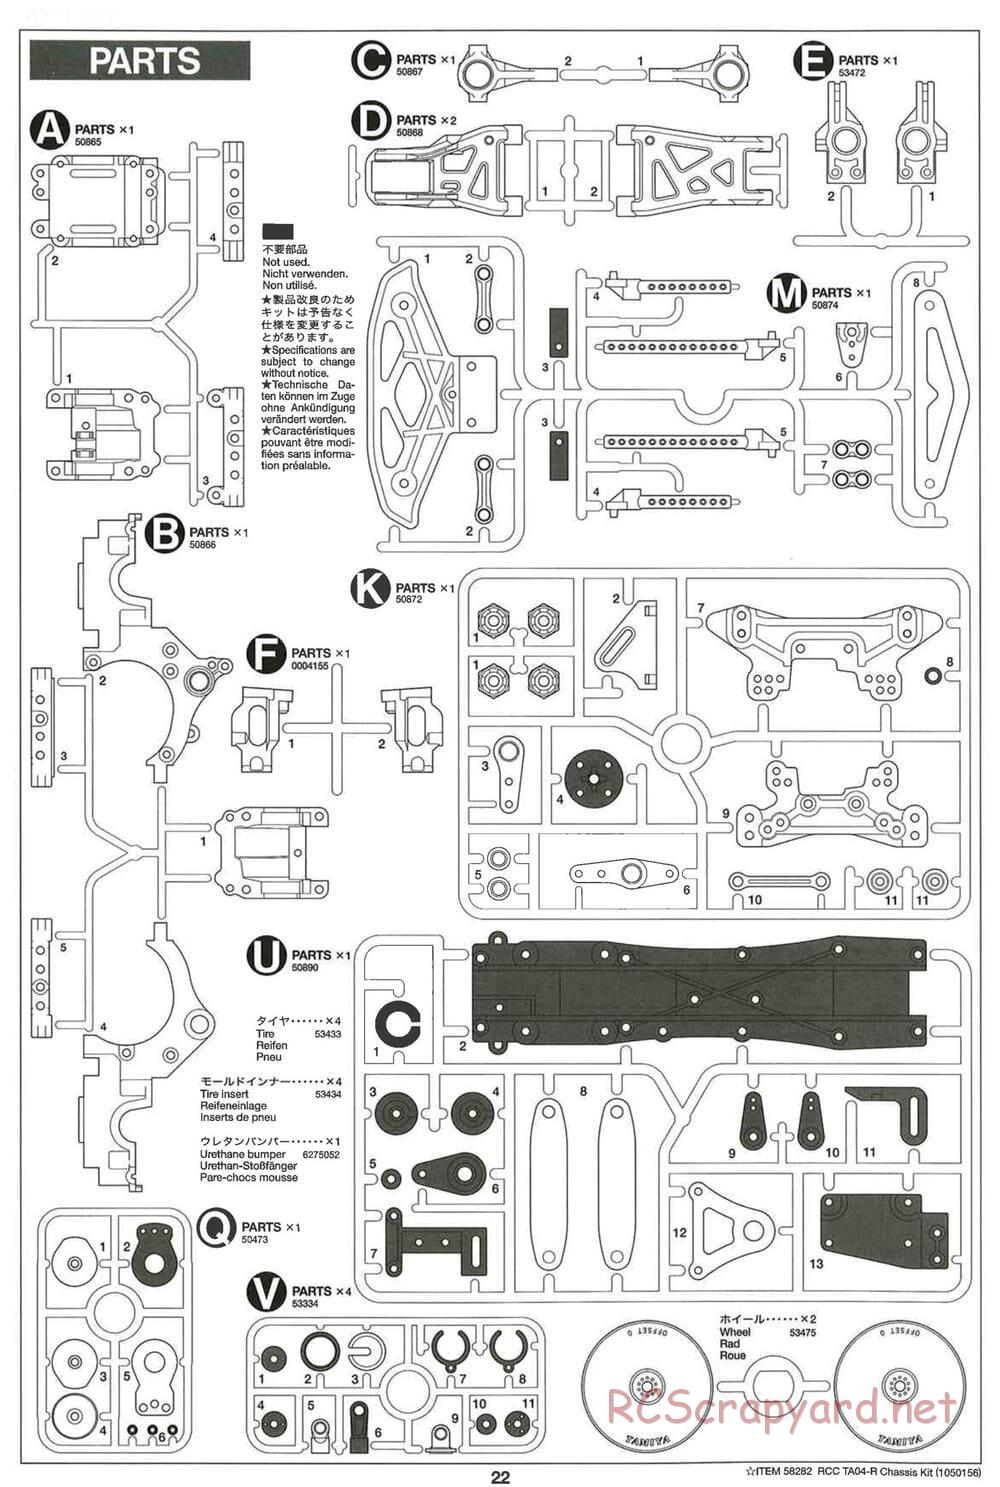 Tamiya - TA-04R Chassis - Manual - Page 22